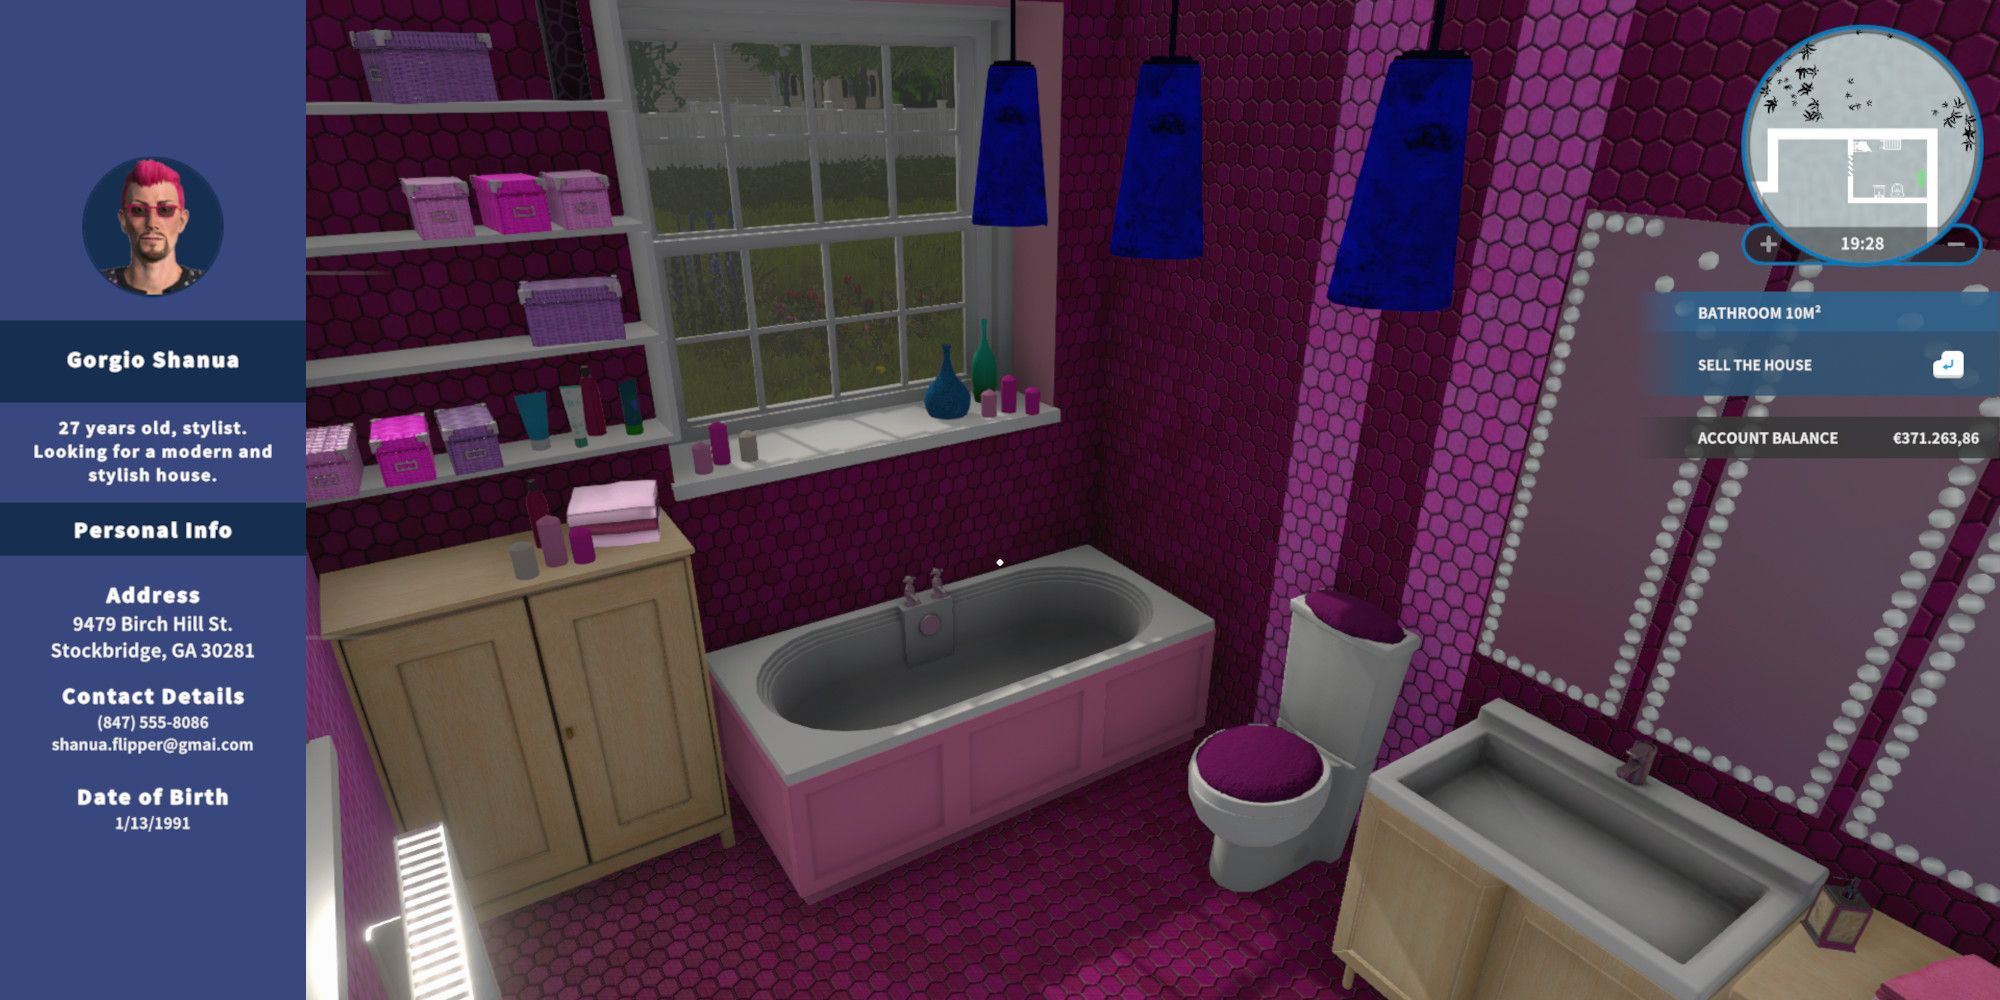 House Flipper Gorgio Shanu's bio next to a screenshot of a very very pink bathroom